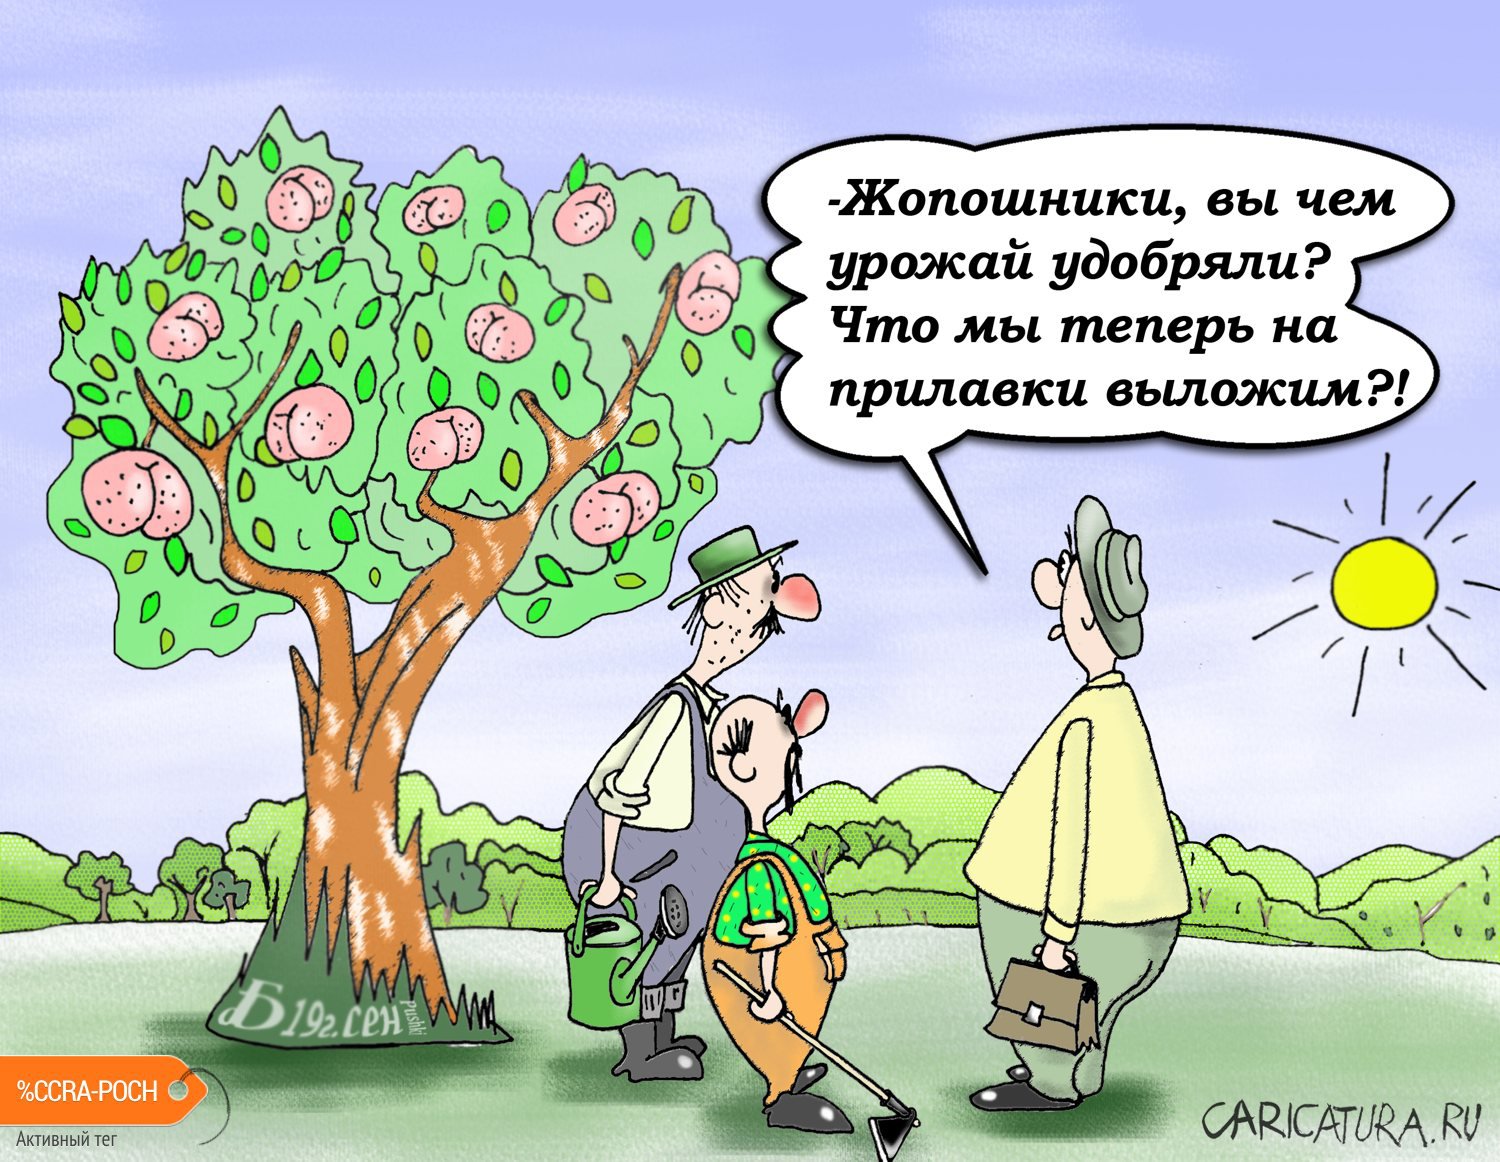 Карикатура "Про селекцию", Борис Демин